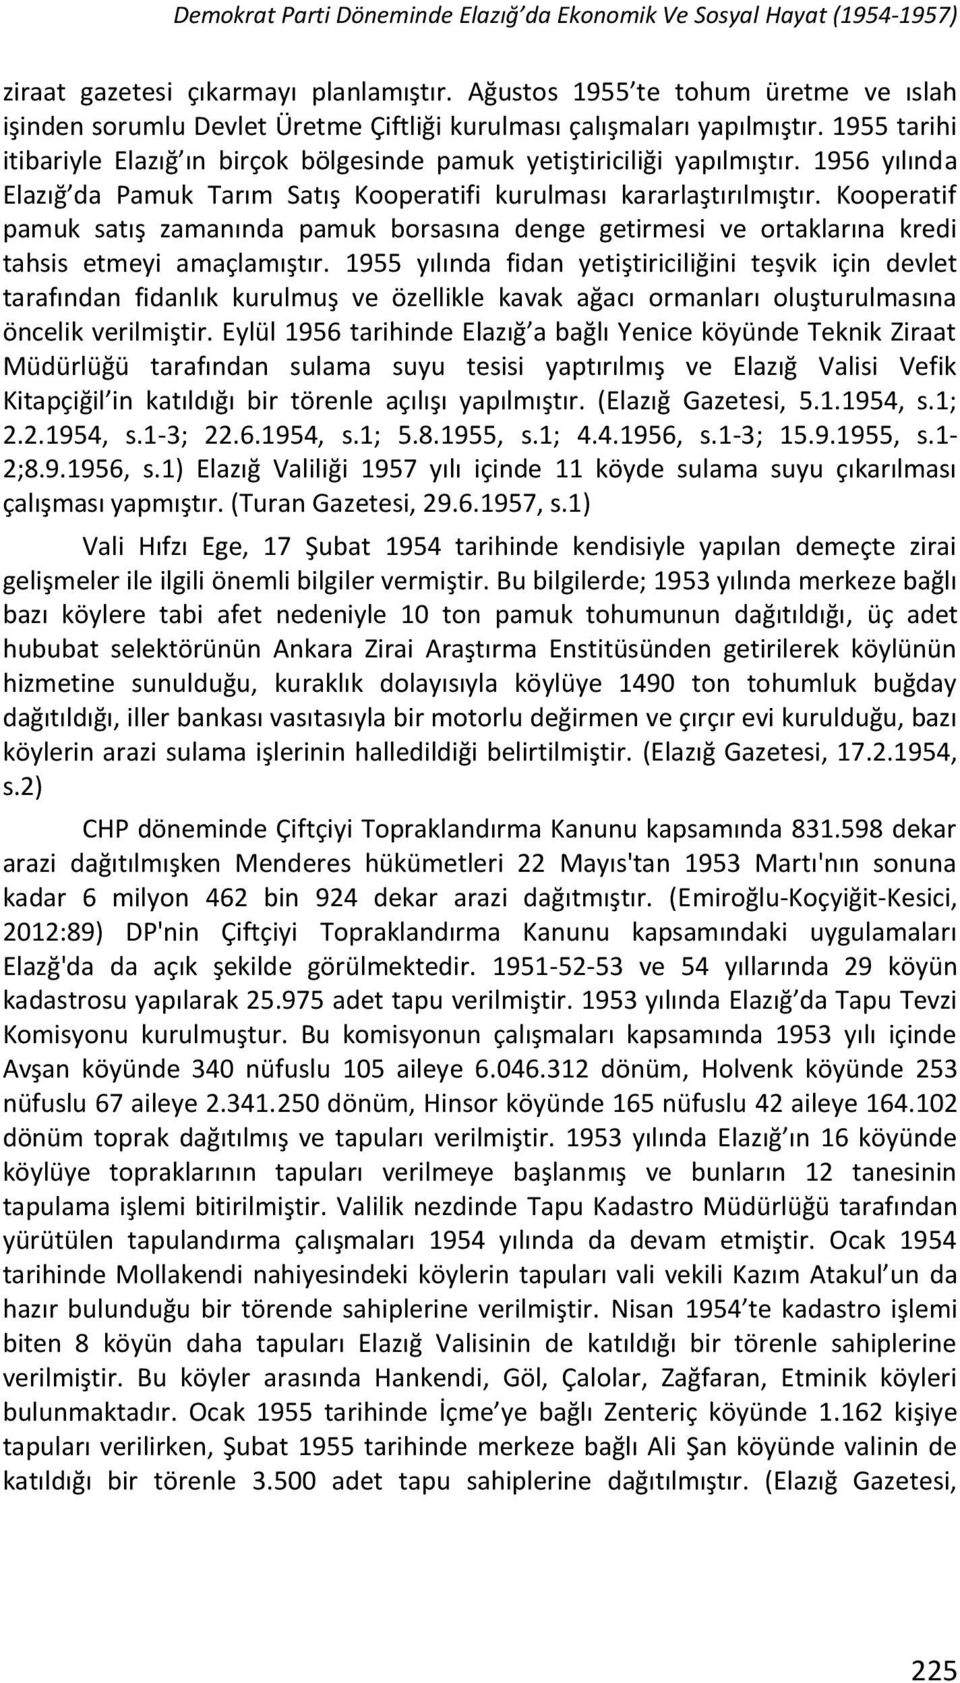 1956 yılında Elazığ da Pamuk Tarım Satış Kooperatifi kurulması kararlaştırılmıştır. Kooperatif pamuk satış zamanında pamuk borsasına denge getirmesi ve ortaklarına kredi tahsis etmeyi amaçlamıştır.